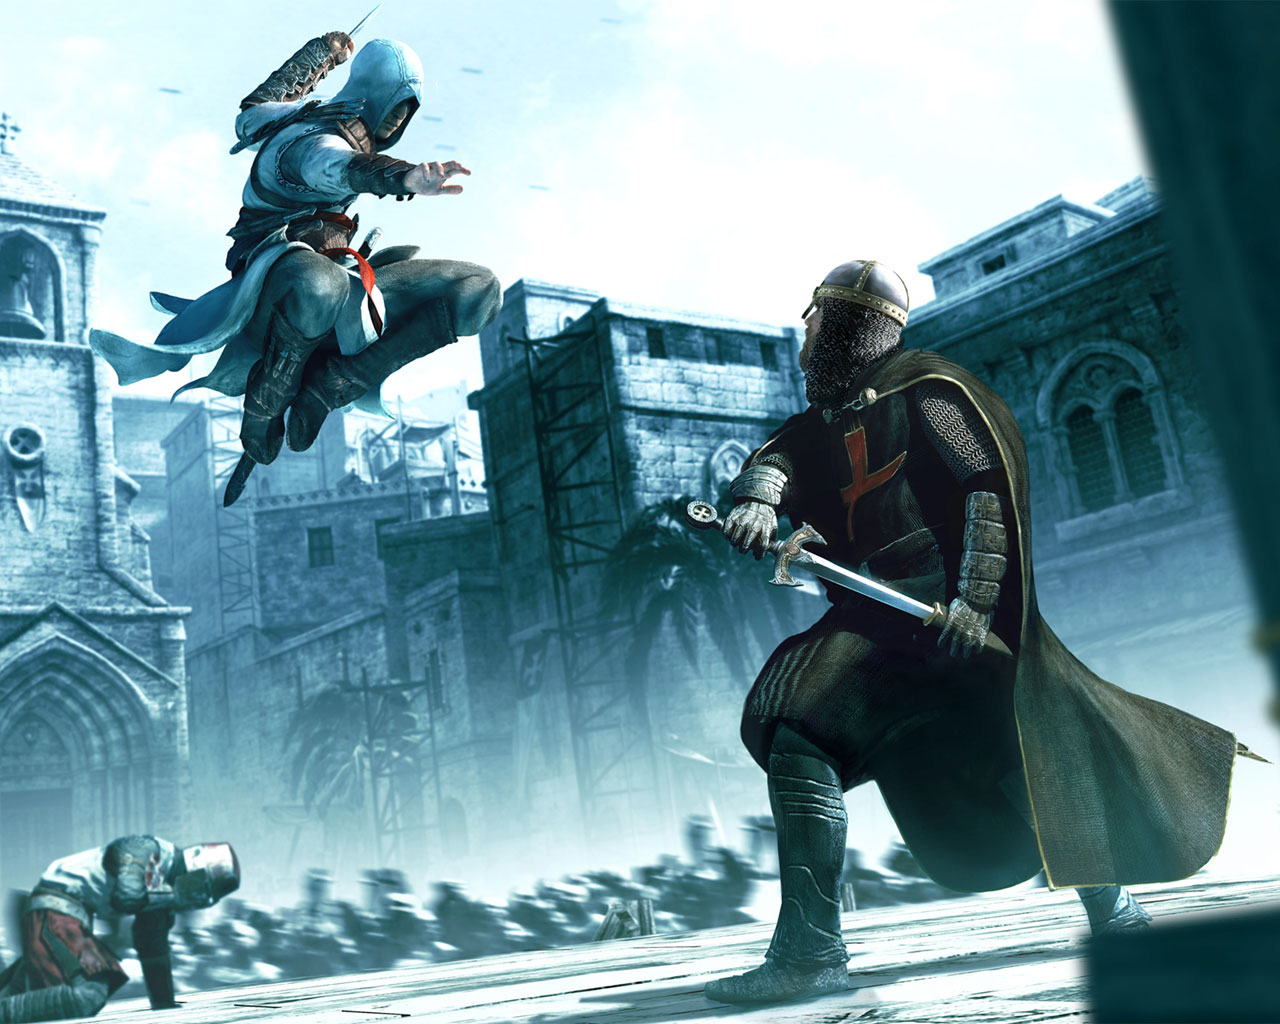 Fond d'ecran Assassin's Creed attaque